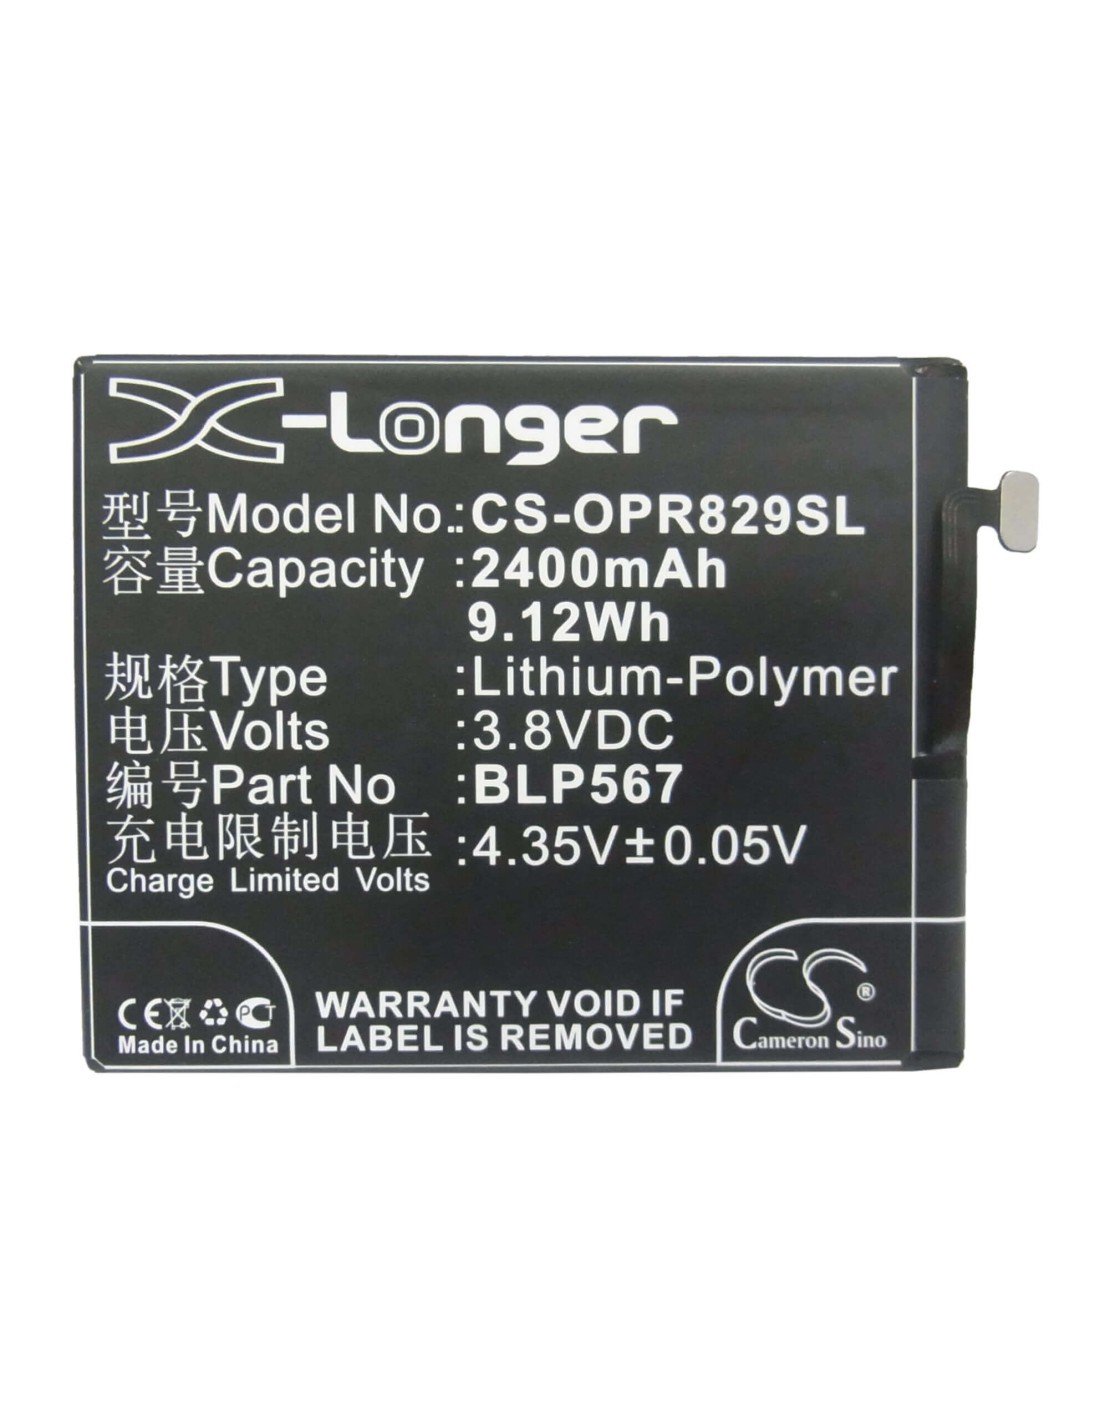 Battery for OPPO R829T, R1, R8007 3.8V, 2400mAh - 9.12Wh